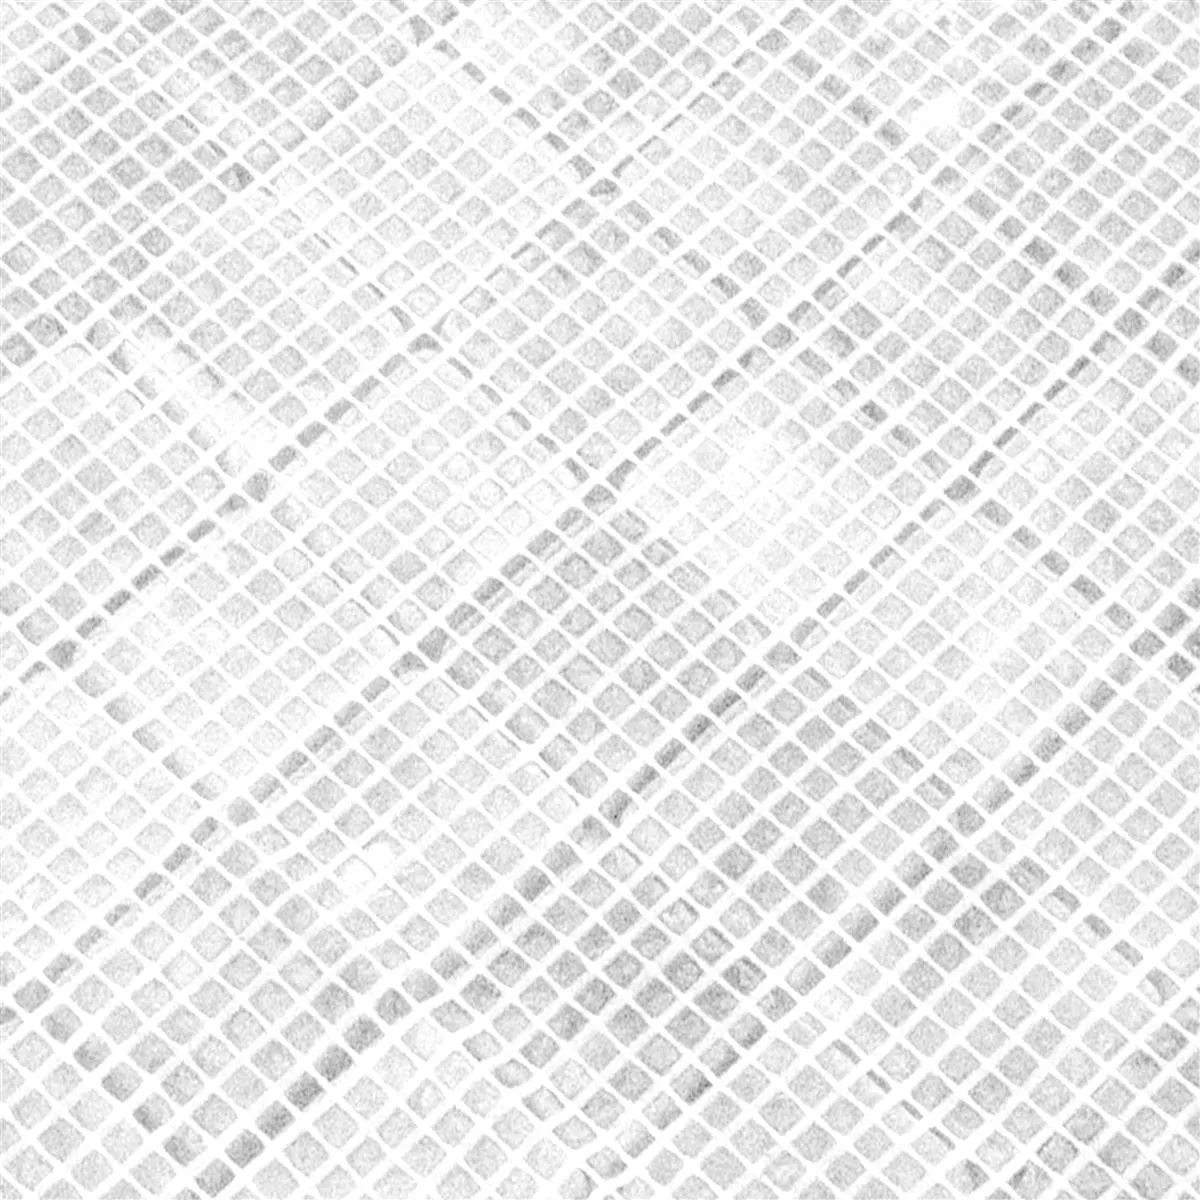 Muster von Marmor Naturstein Mosaik Fliesen Venantius Weiß